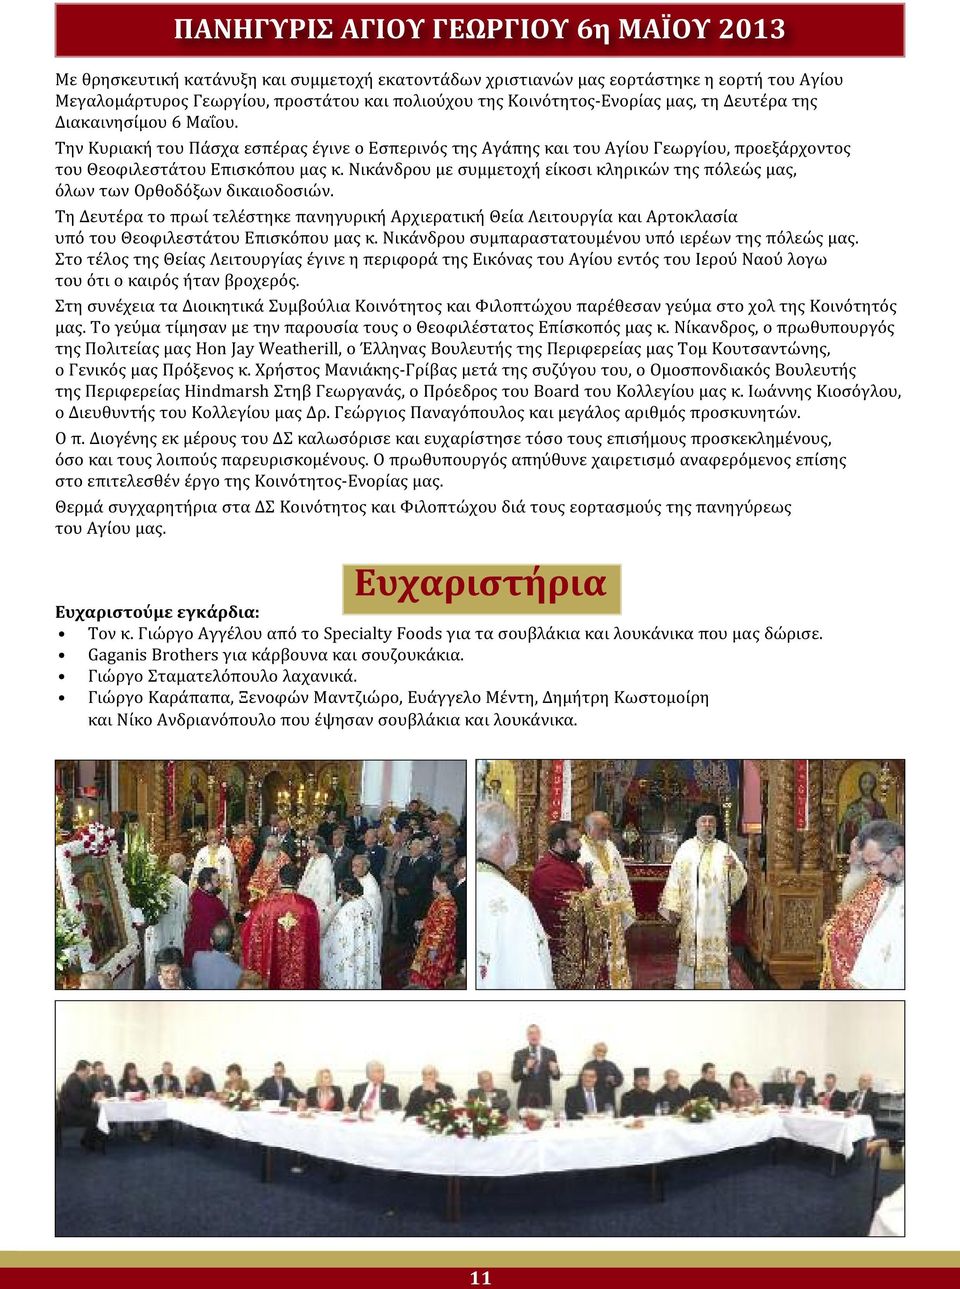 Νικάνδρου με συμμετοχή είκοσι κληρικών της πόλεώς μας, όλων των Ορθοδόξων δικαιοδοσιών.